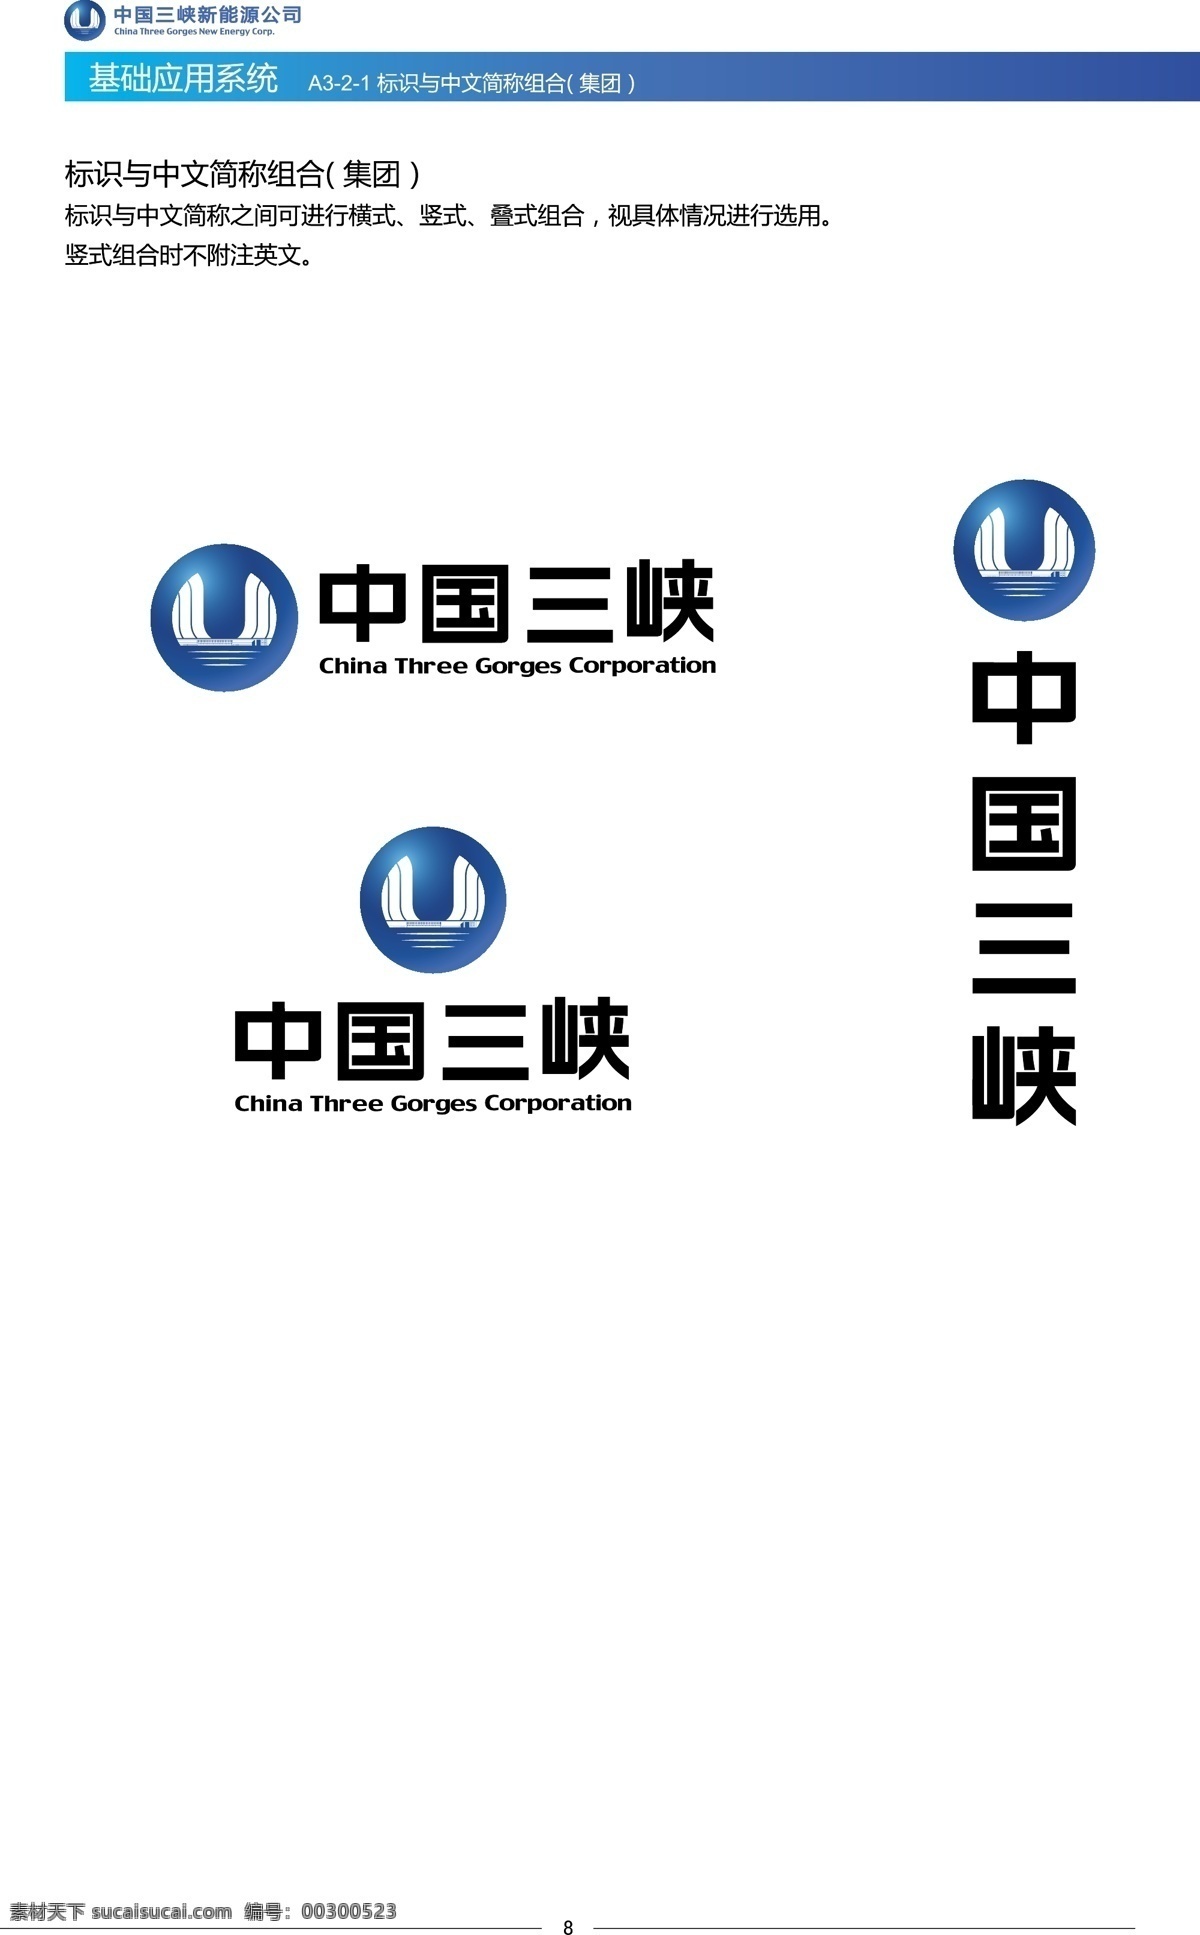 中国 三峡 logo 系统ai 中国三峡 标识 标志图标 企业 标志